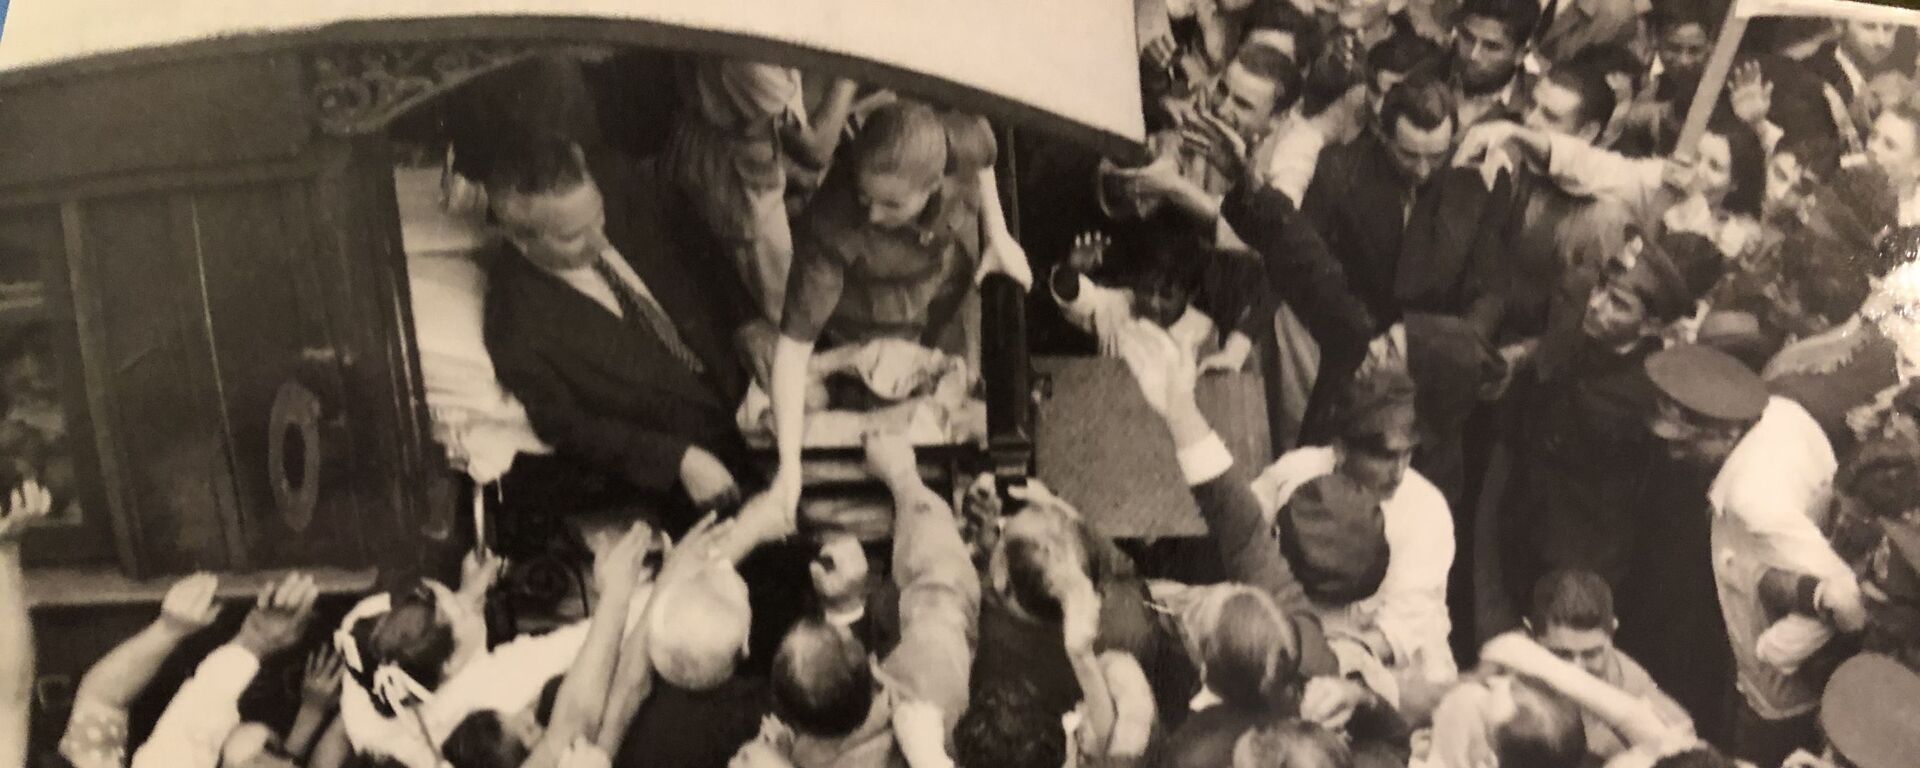 Hace 68 años, casi un millón de personas clamaron por la fórmula Perón-Perón en Argentina, Museo Evita en Buenos Aires - Sputnik Mundo, 1920, 22.08.2019